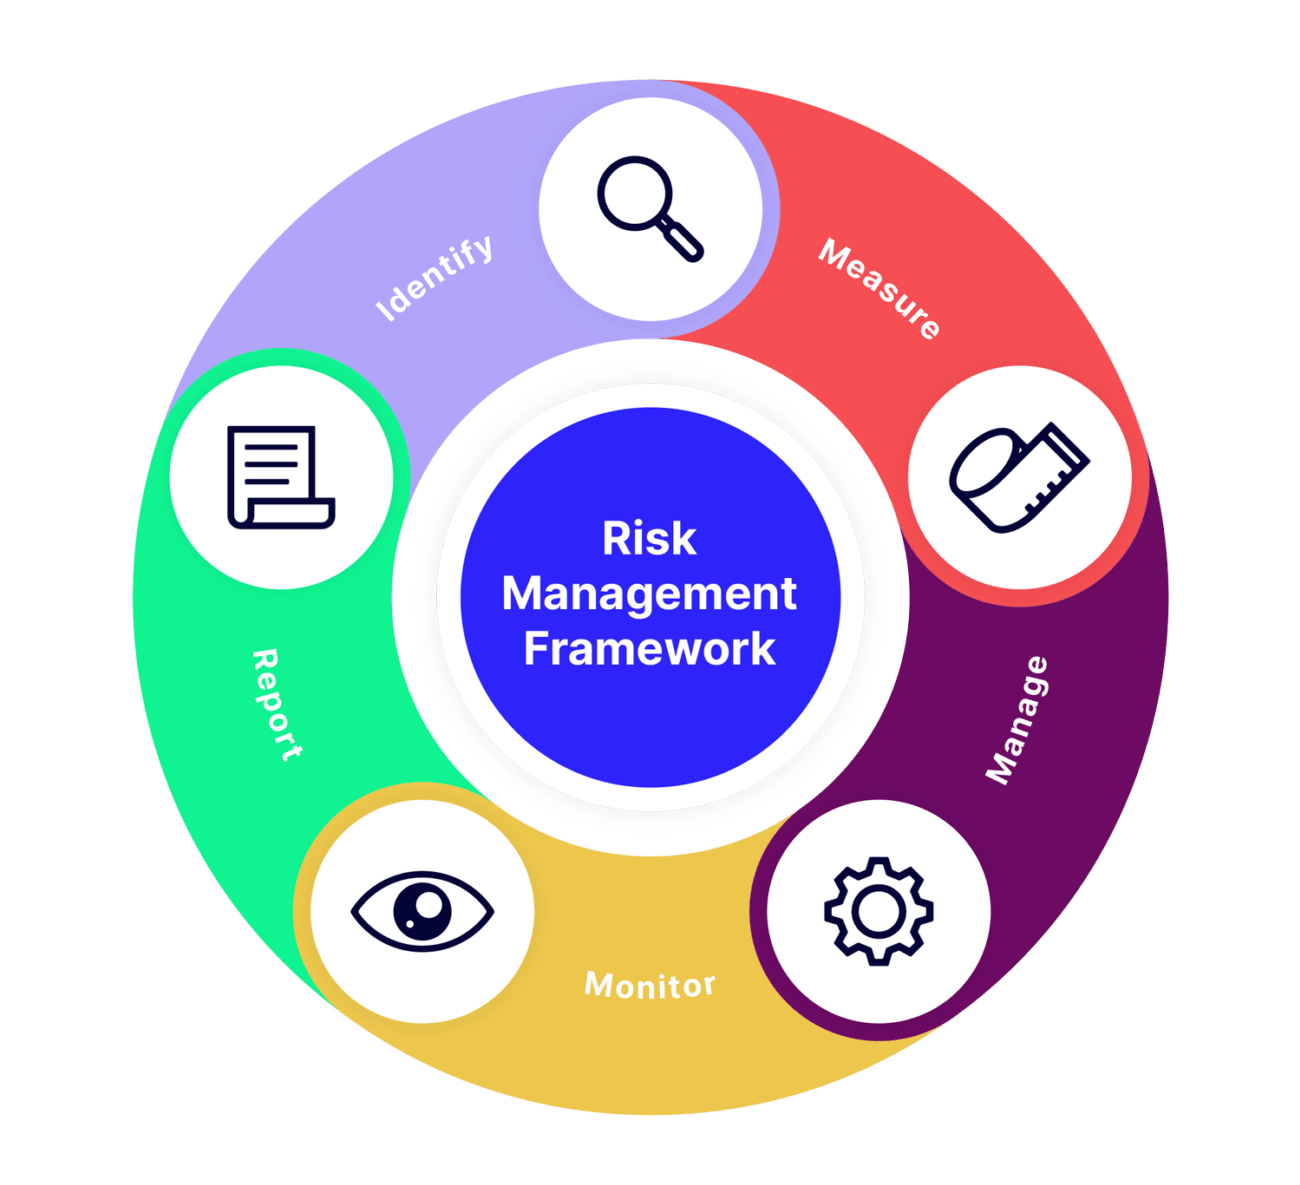 Supplier Risk Management: Risk Mitigation & Assessment